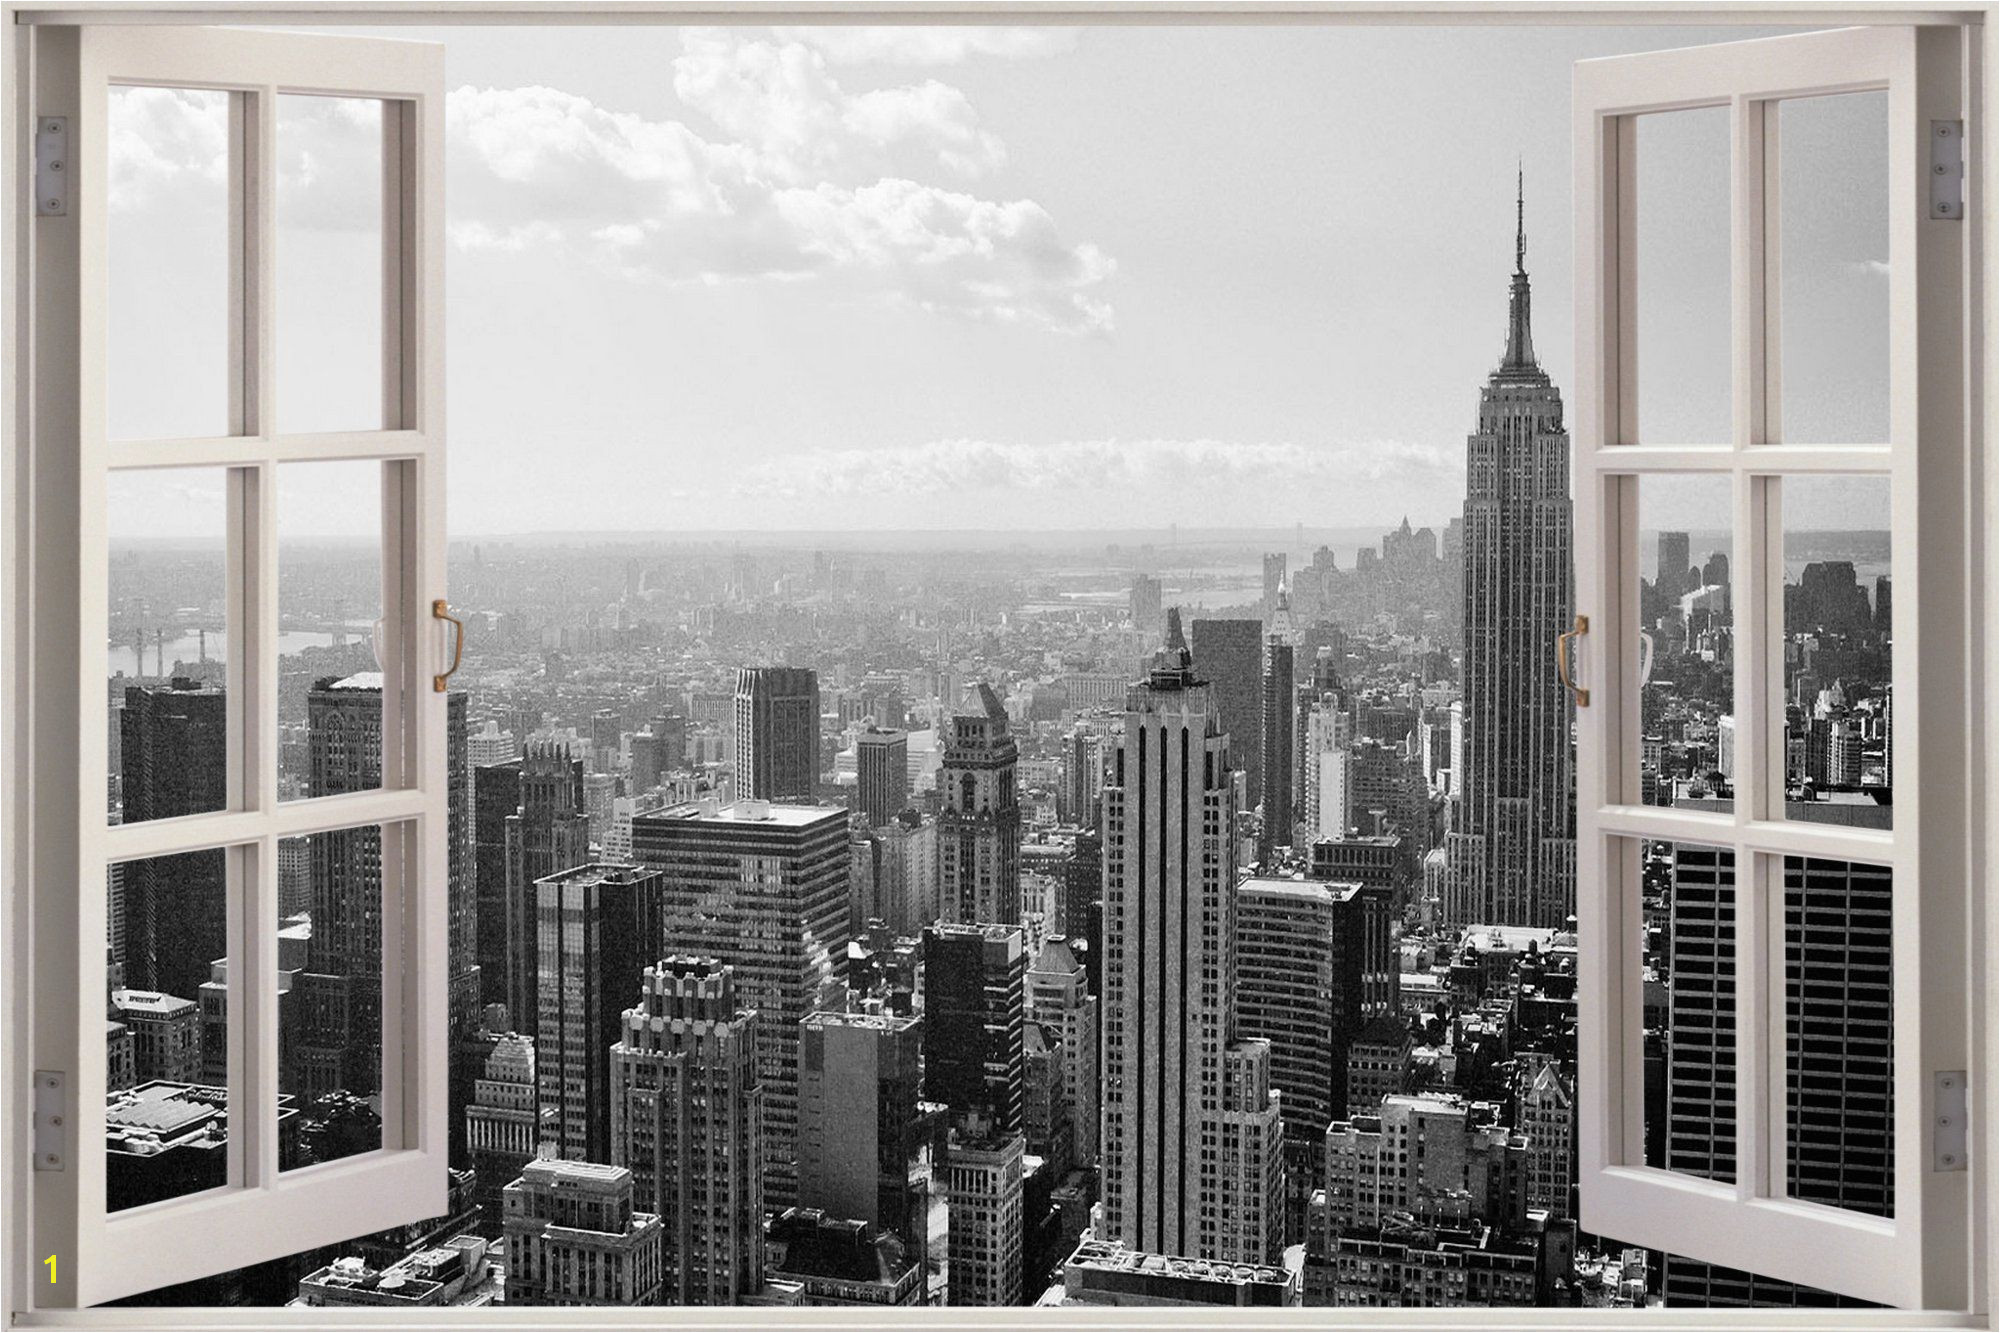 City Skyline Murals Wallpaper Huge 3d Window New York City View Wall Stickers Mural Art Decal